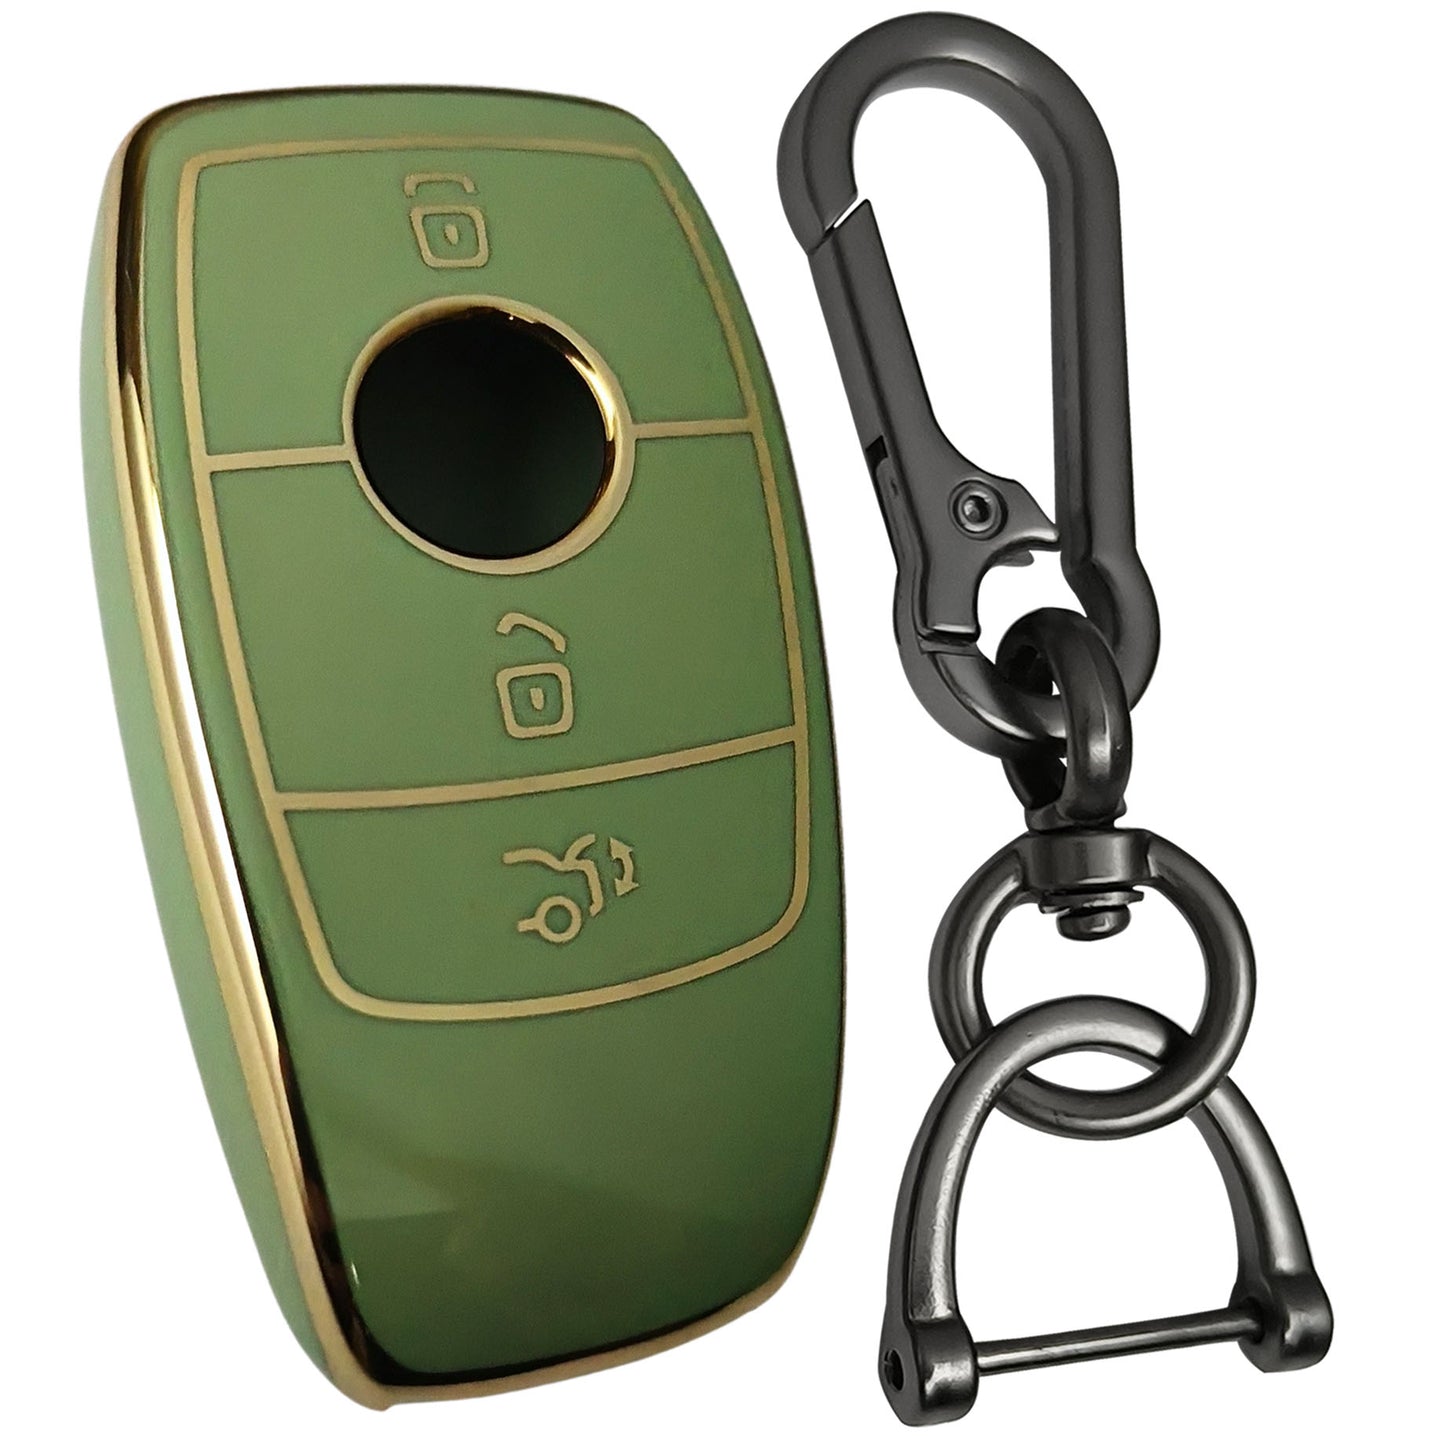 mercedes benz e-series 3b tpu green key case keychain